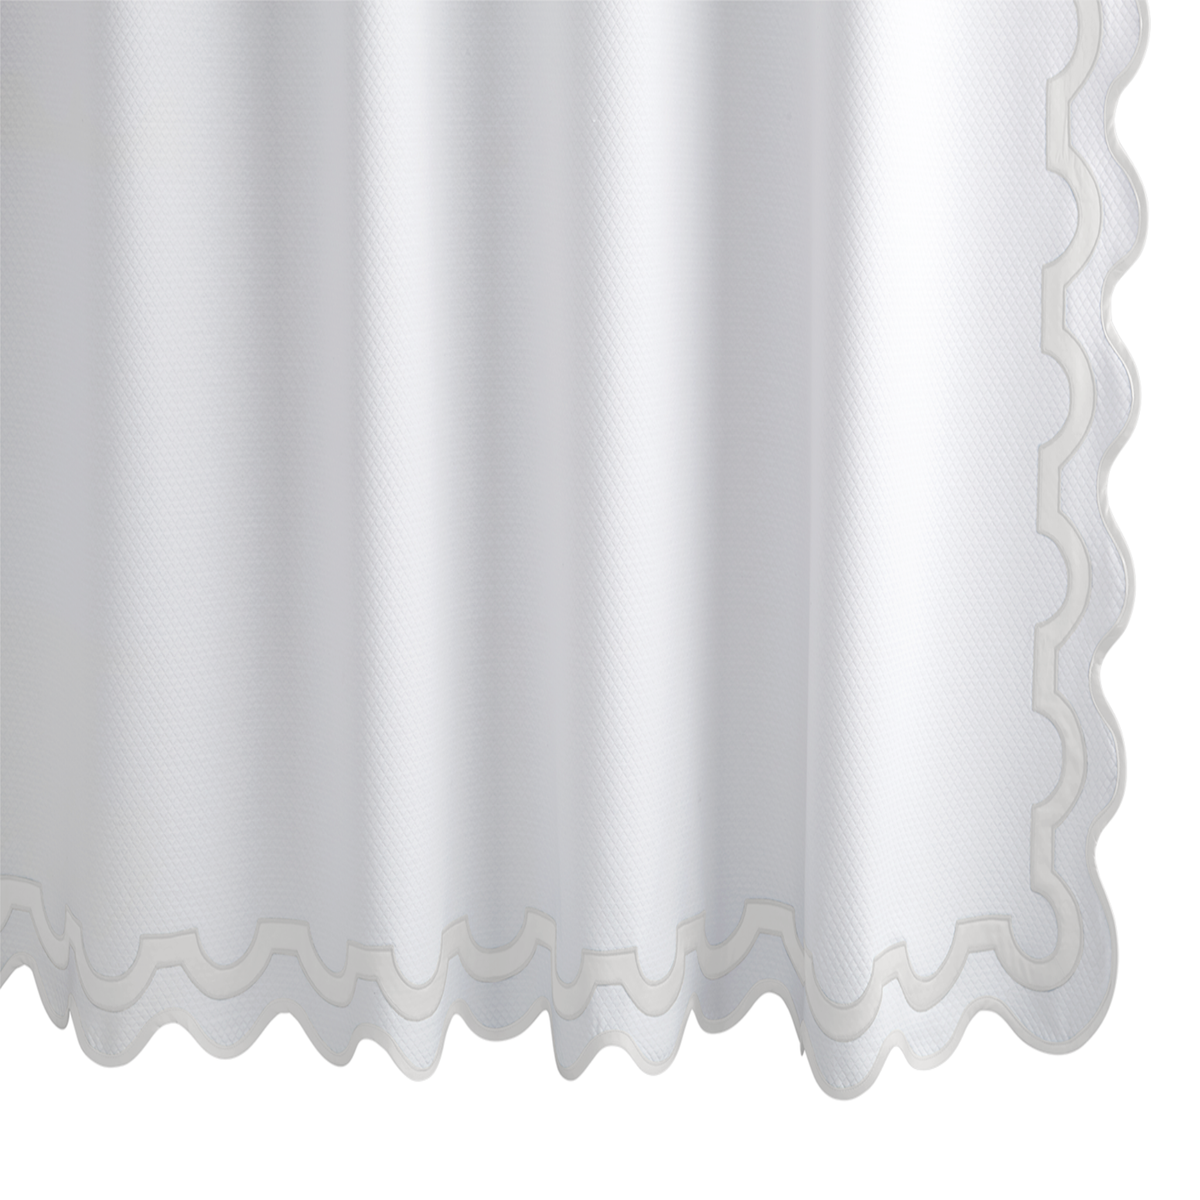 Hanging Edges of Matouk Mirasol Pique Shower Curtain in Bone Color